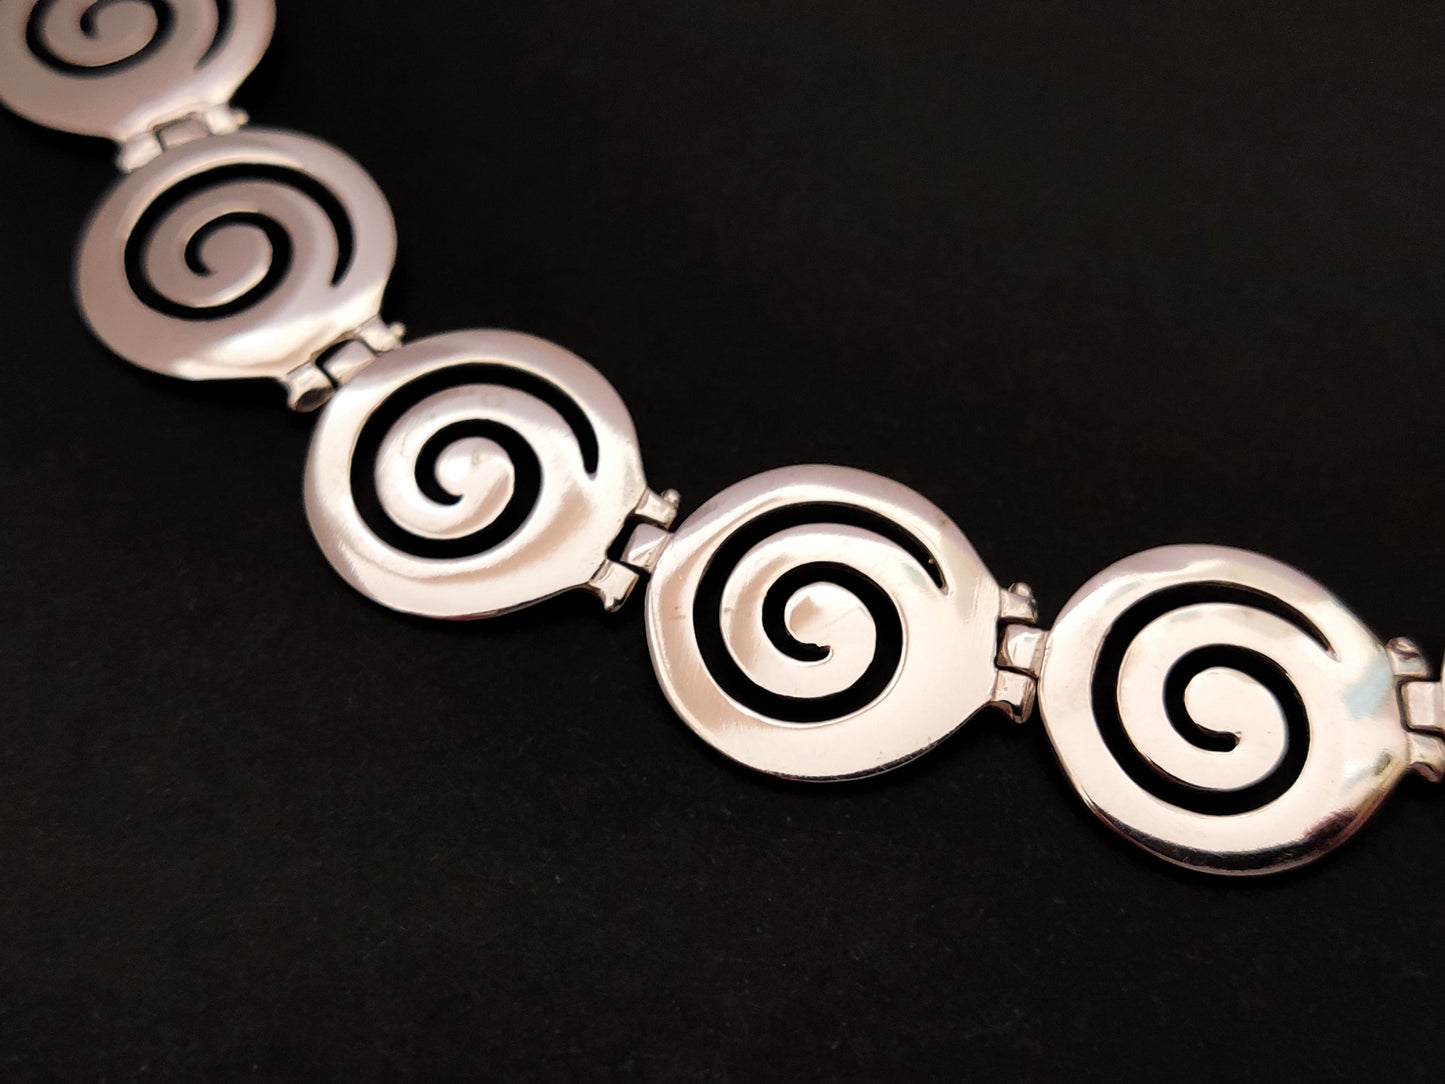 Greek Spiral Silver Necklace 19mm